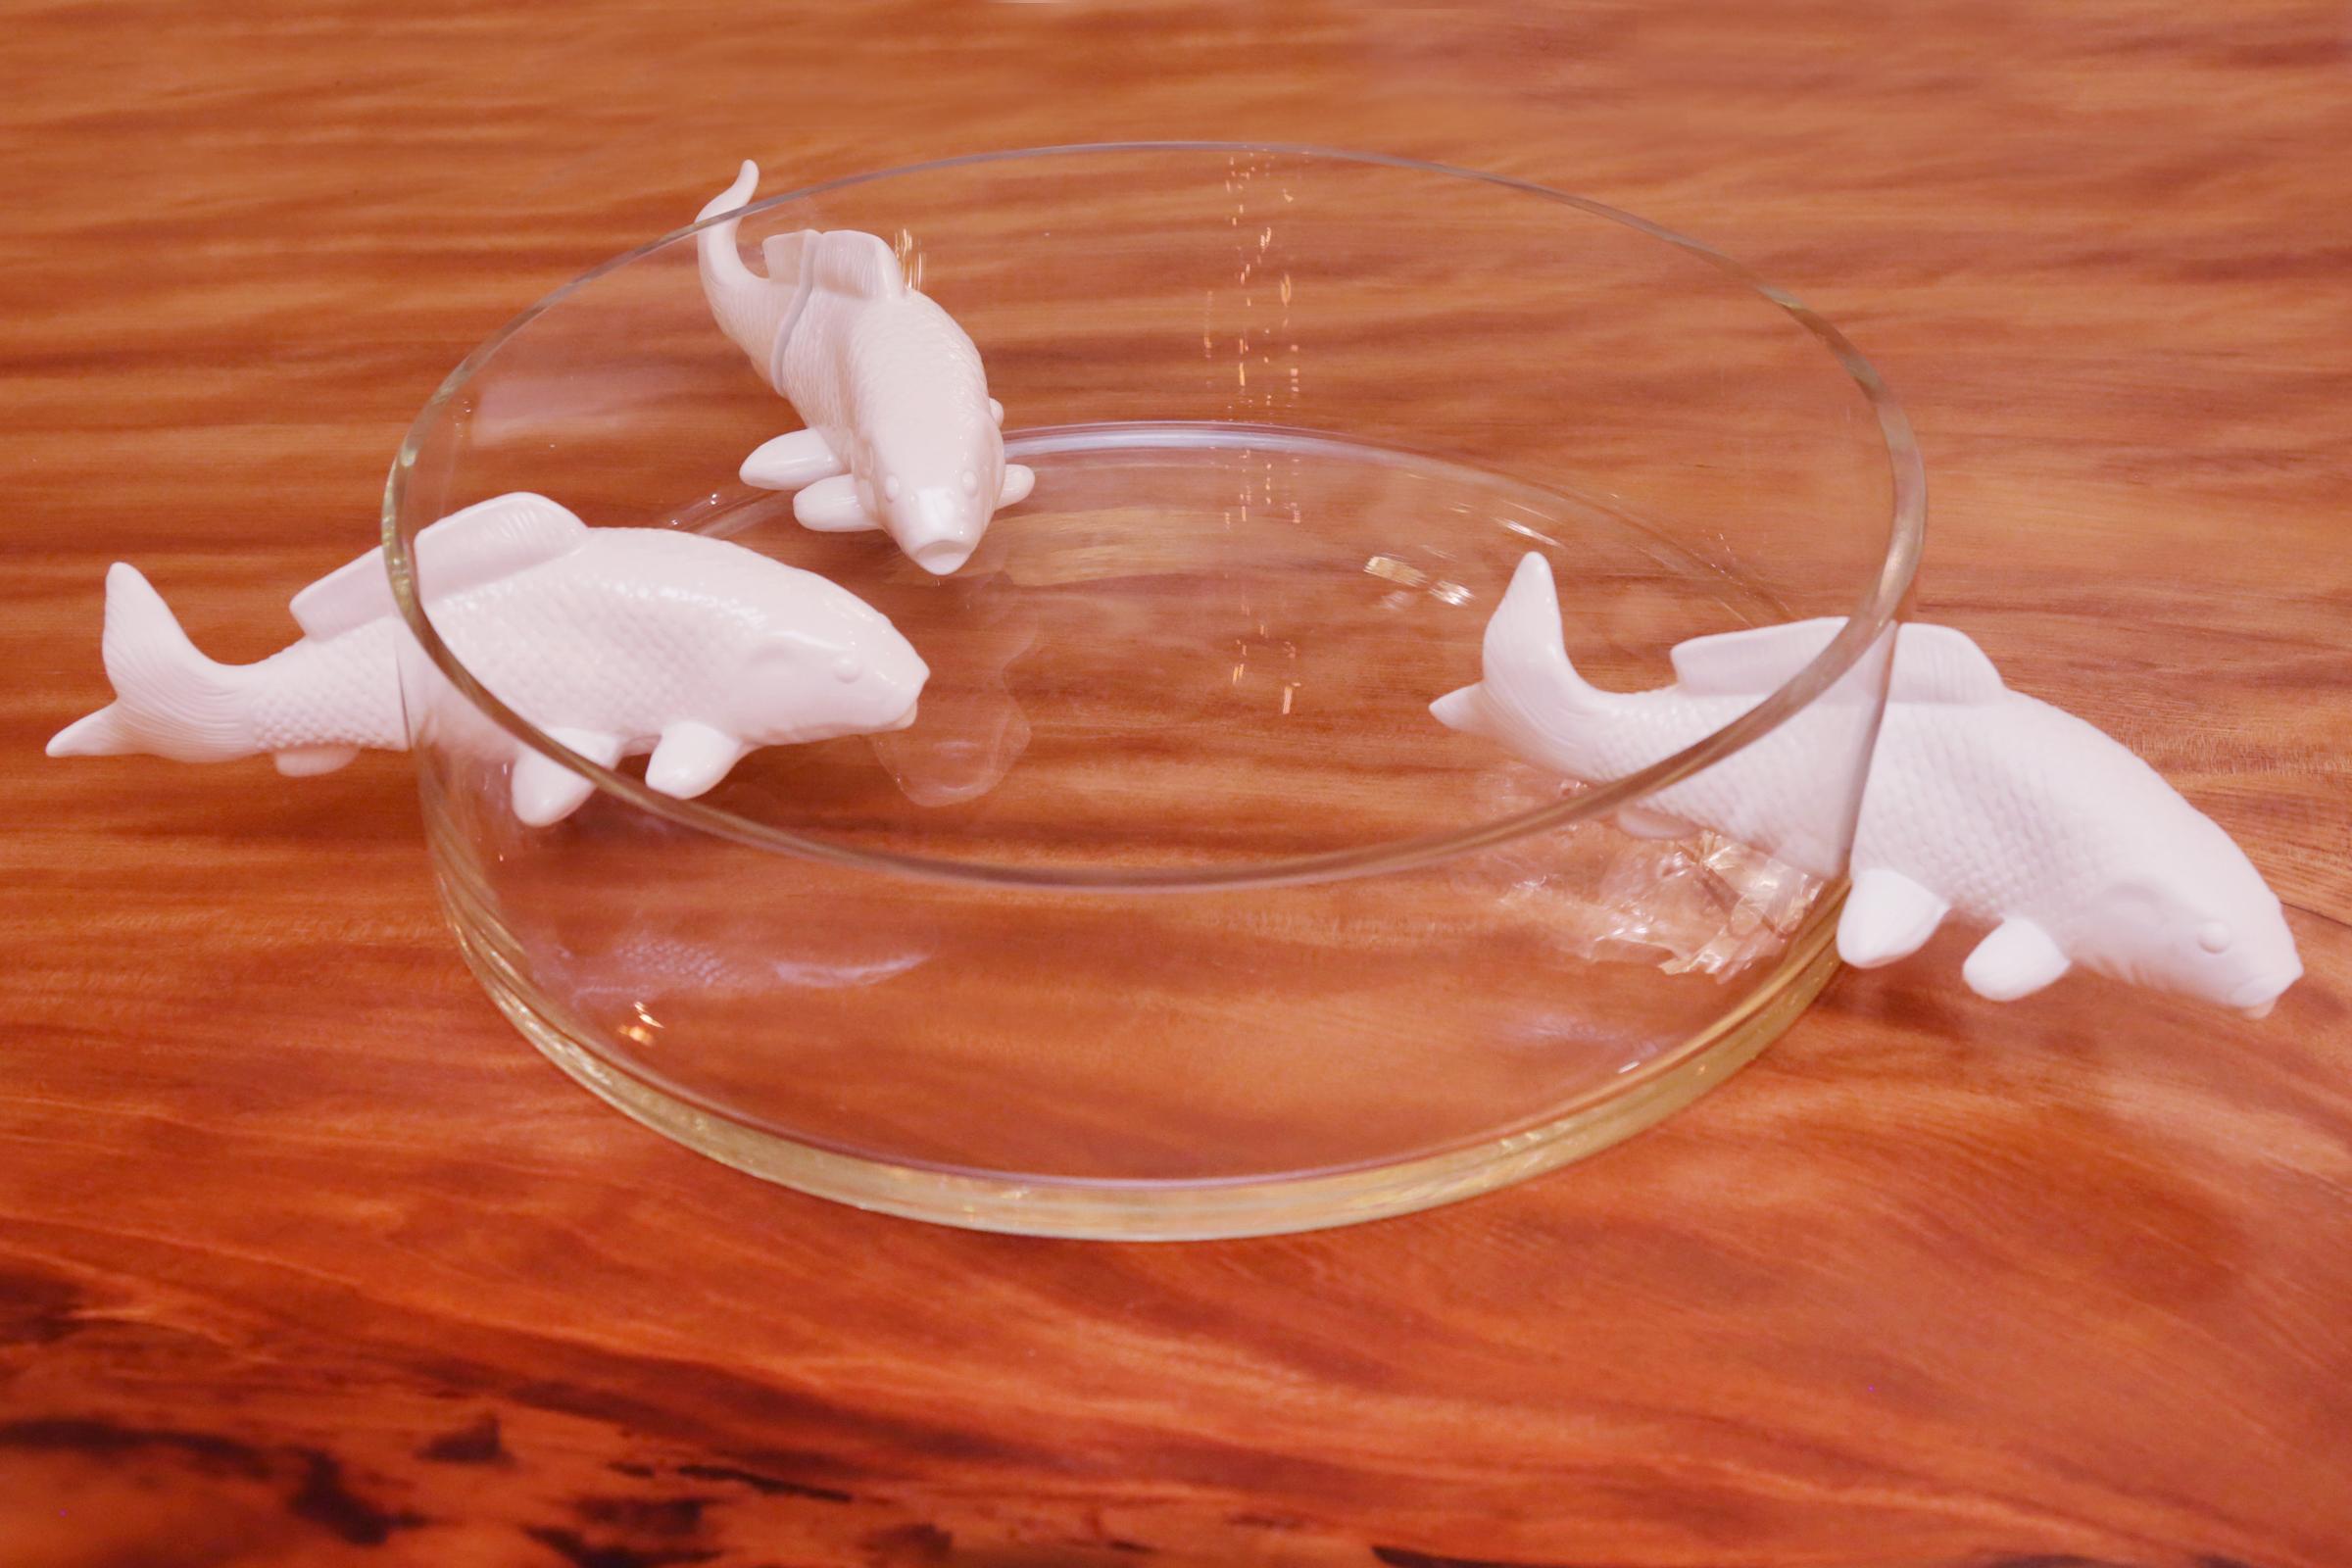 Glasbecher mit drei weißen Fischen in Keramik
mit 3 Fischen, die durchschwimmen
einen runden Glasbecher.
Maße: Durchmesser der Tasse 40 cm.
Becherdurchmesser mit Fischen 60 cm.
    